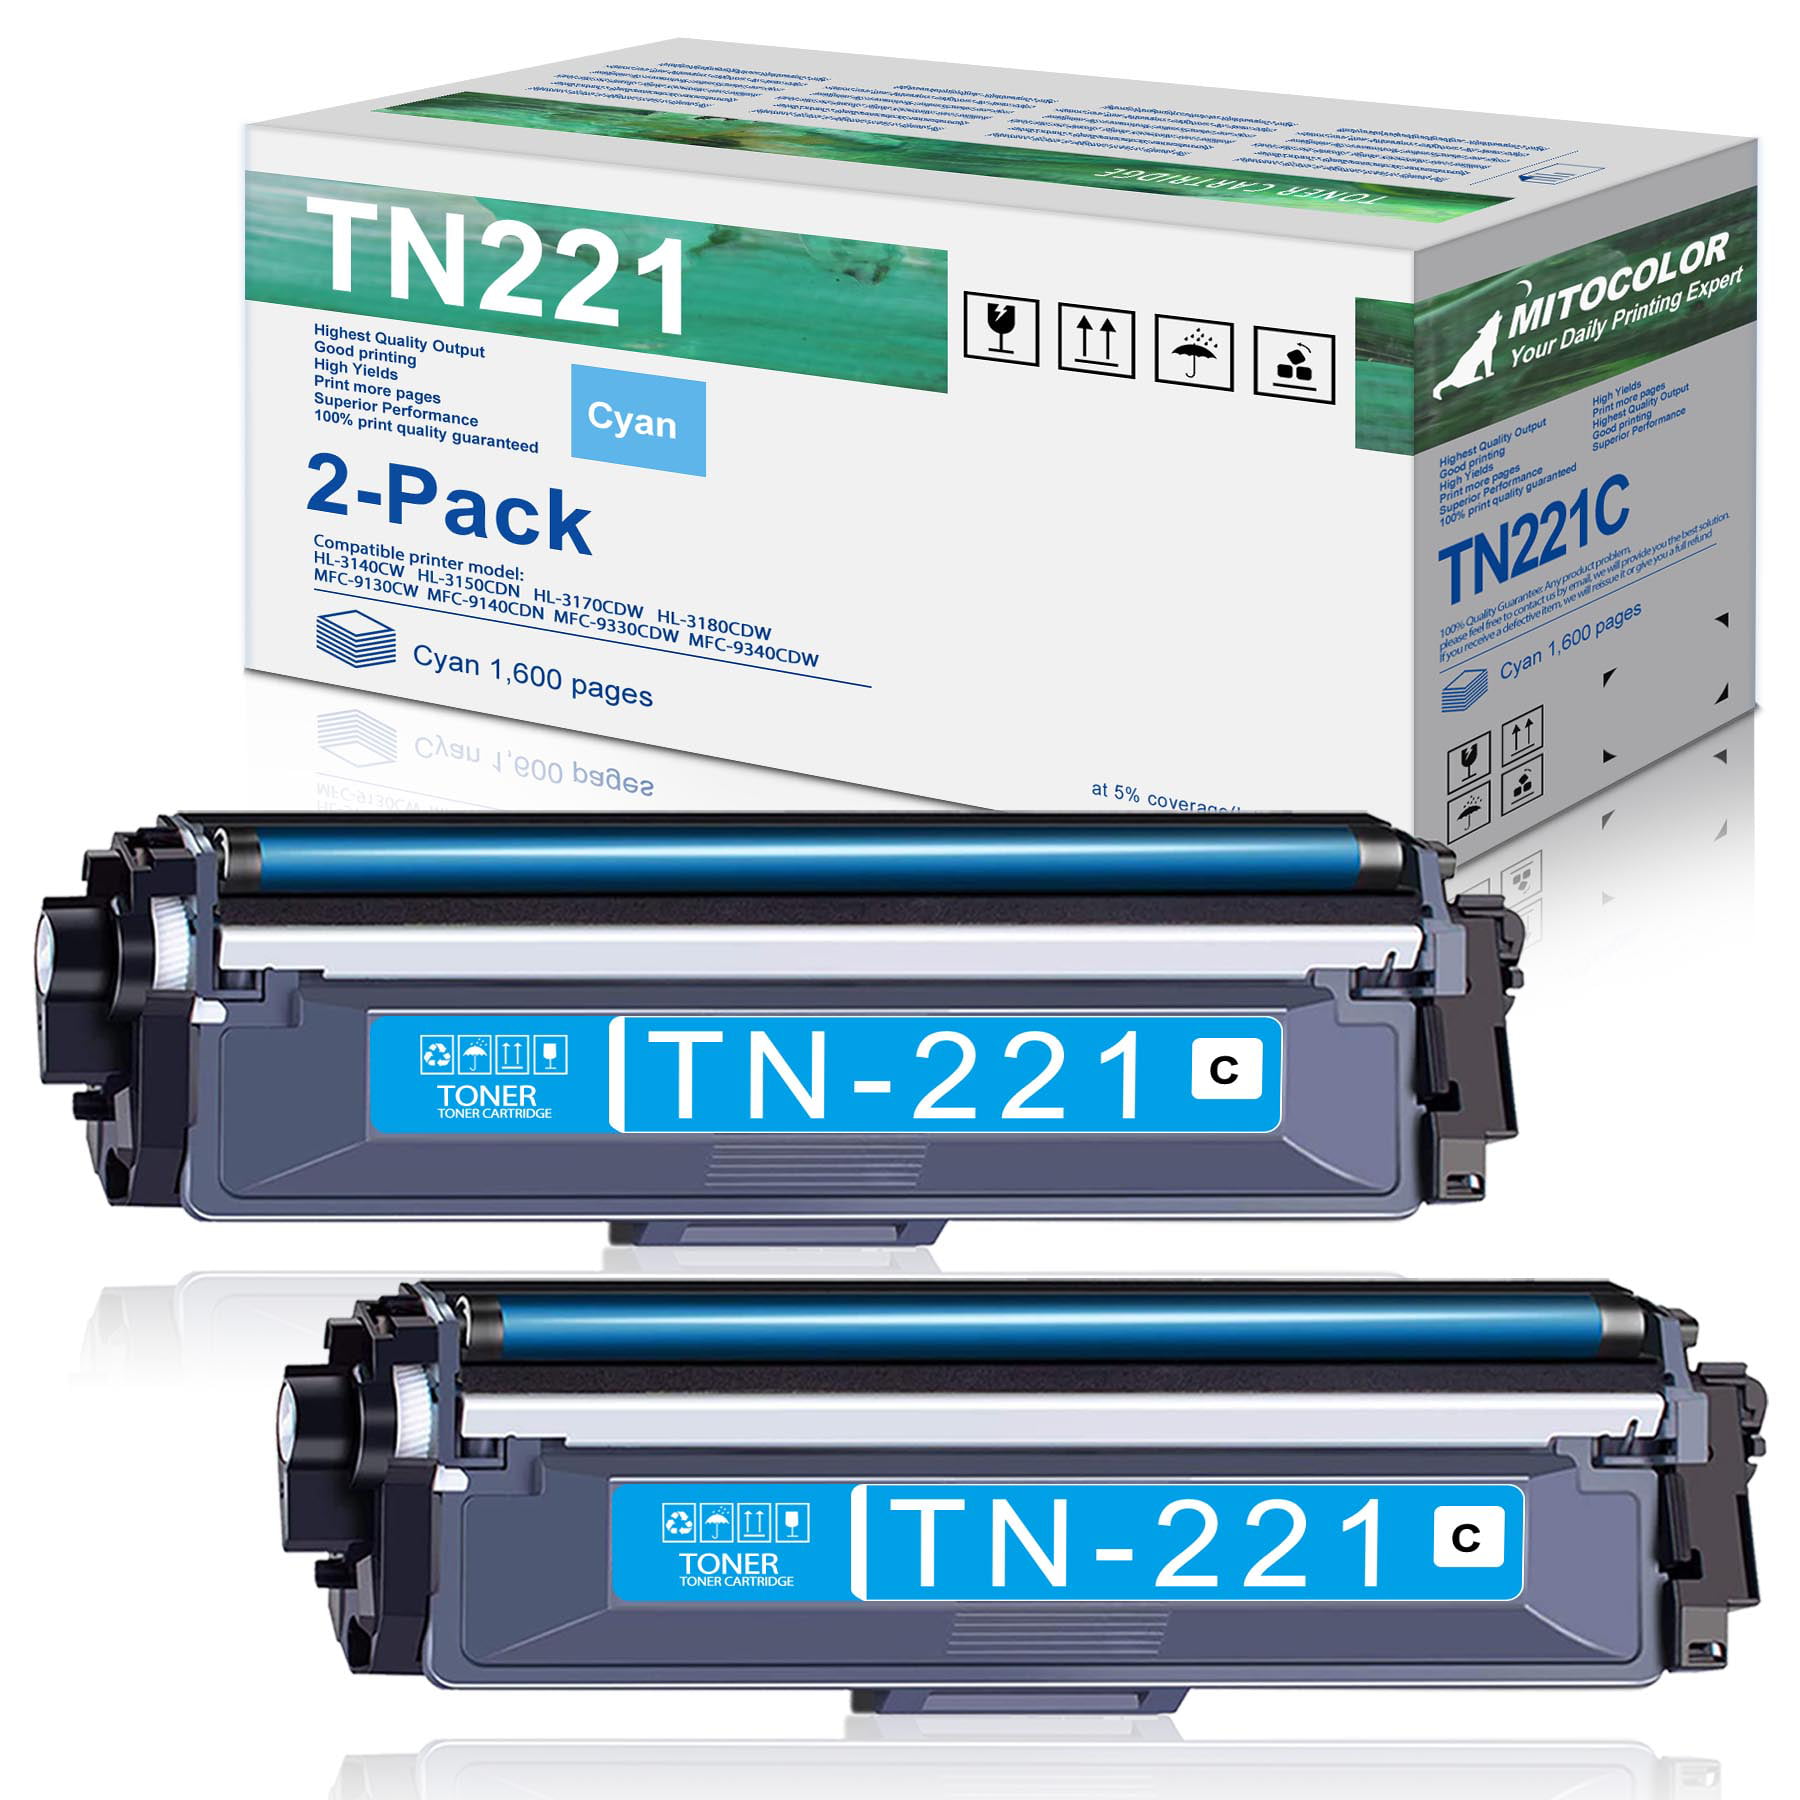 TN221 TN221C Toner Compatible Cartridge for Brother HL-3140CW HL-3150CDN HL-3170CDW MFC-9330CDW HL-3180CDW MFC-9130CW Printer (Cyan, Pack) - Walmart.com